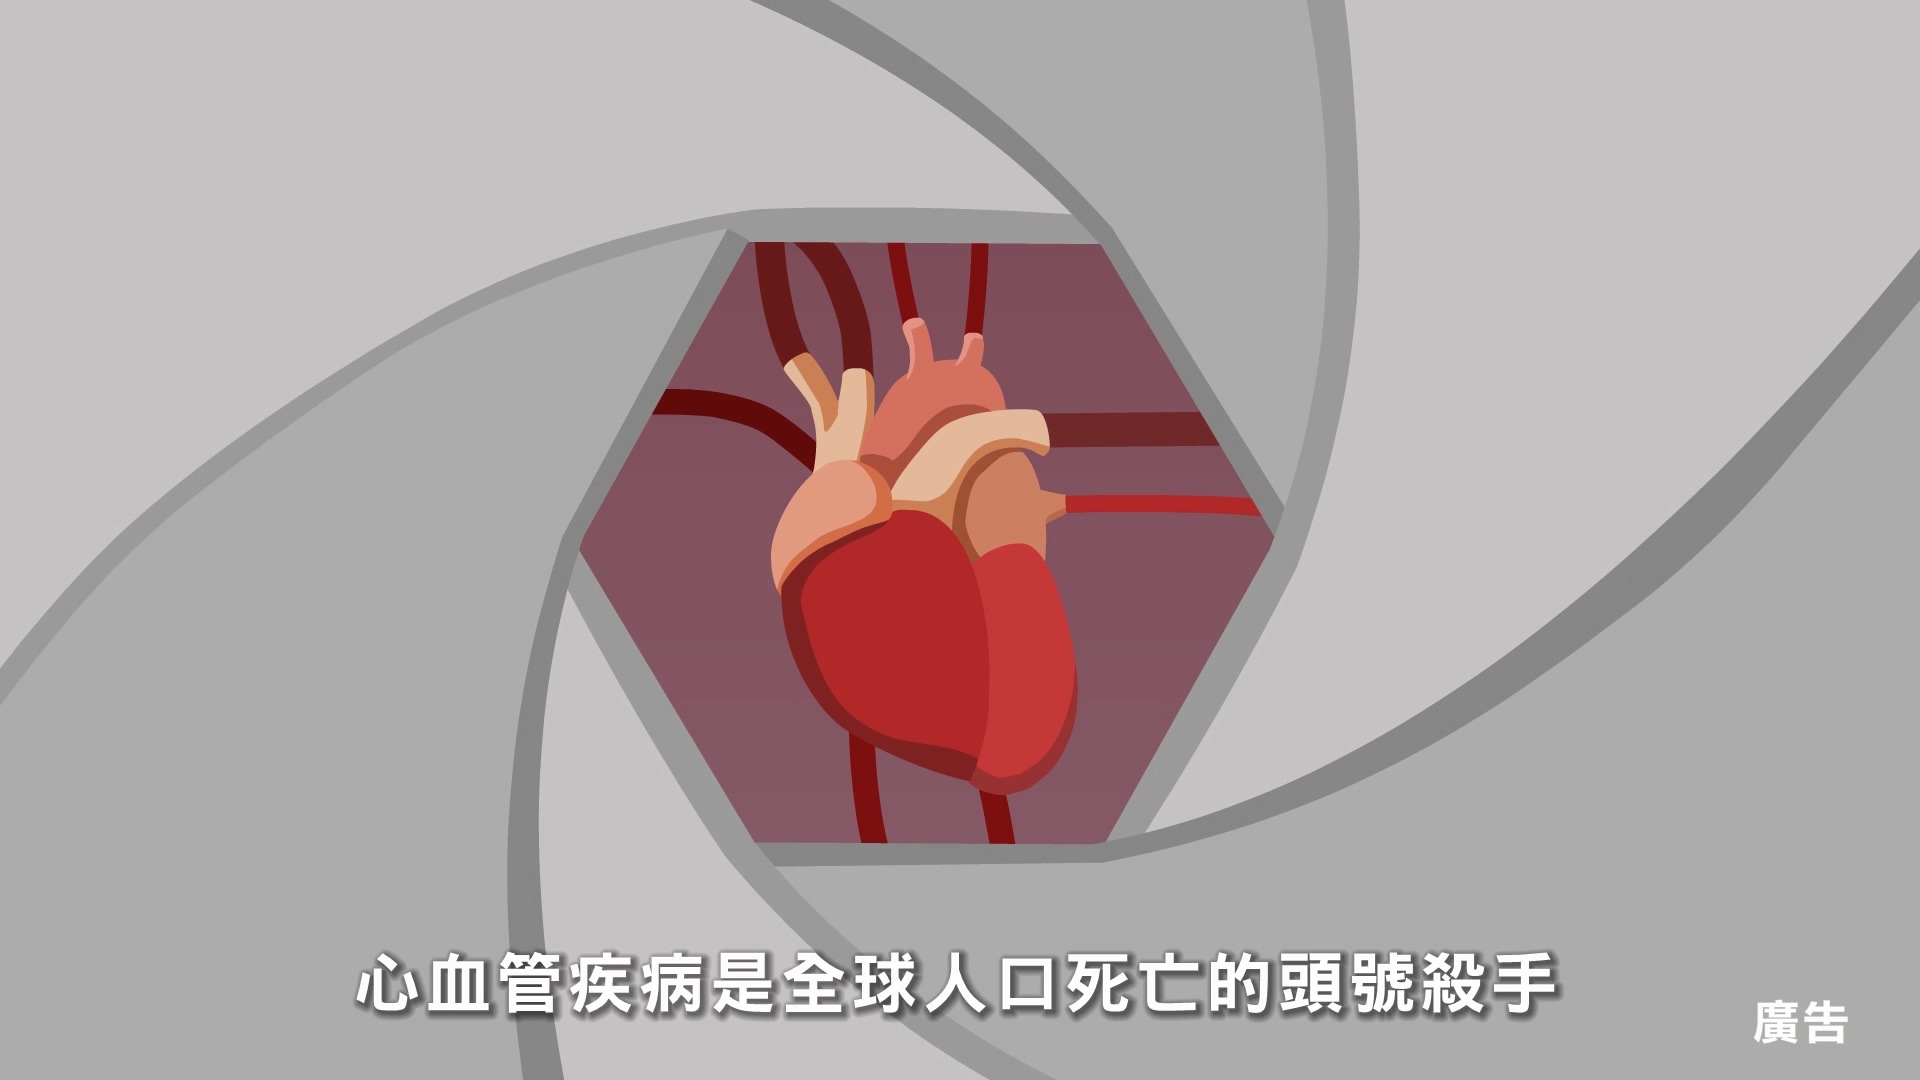 預防心血管疾病 危險因子篇 30秒短片 (客語版)